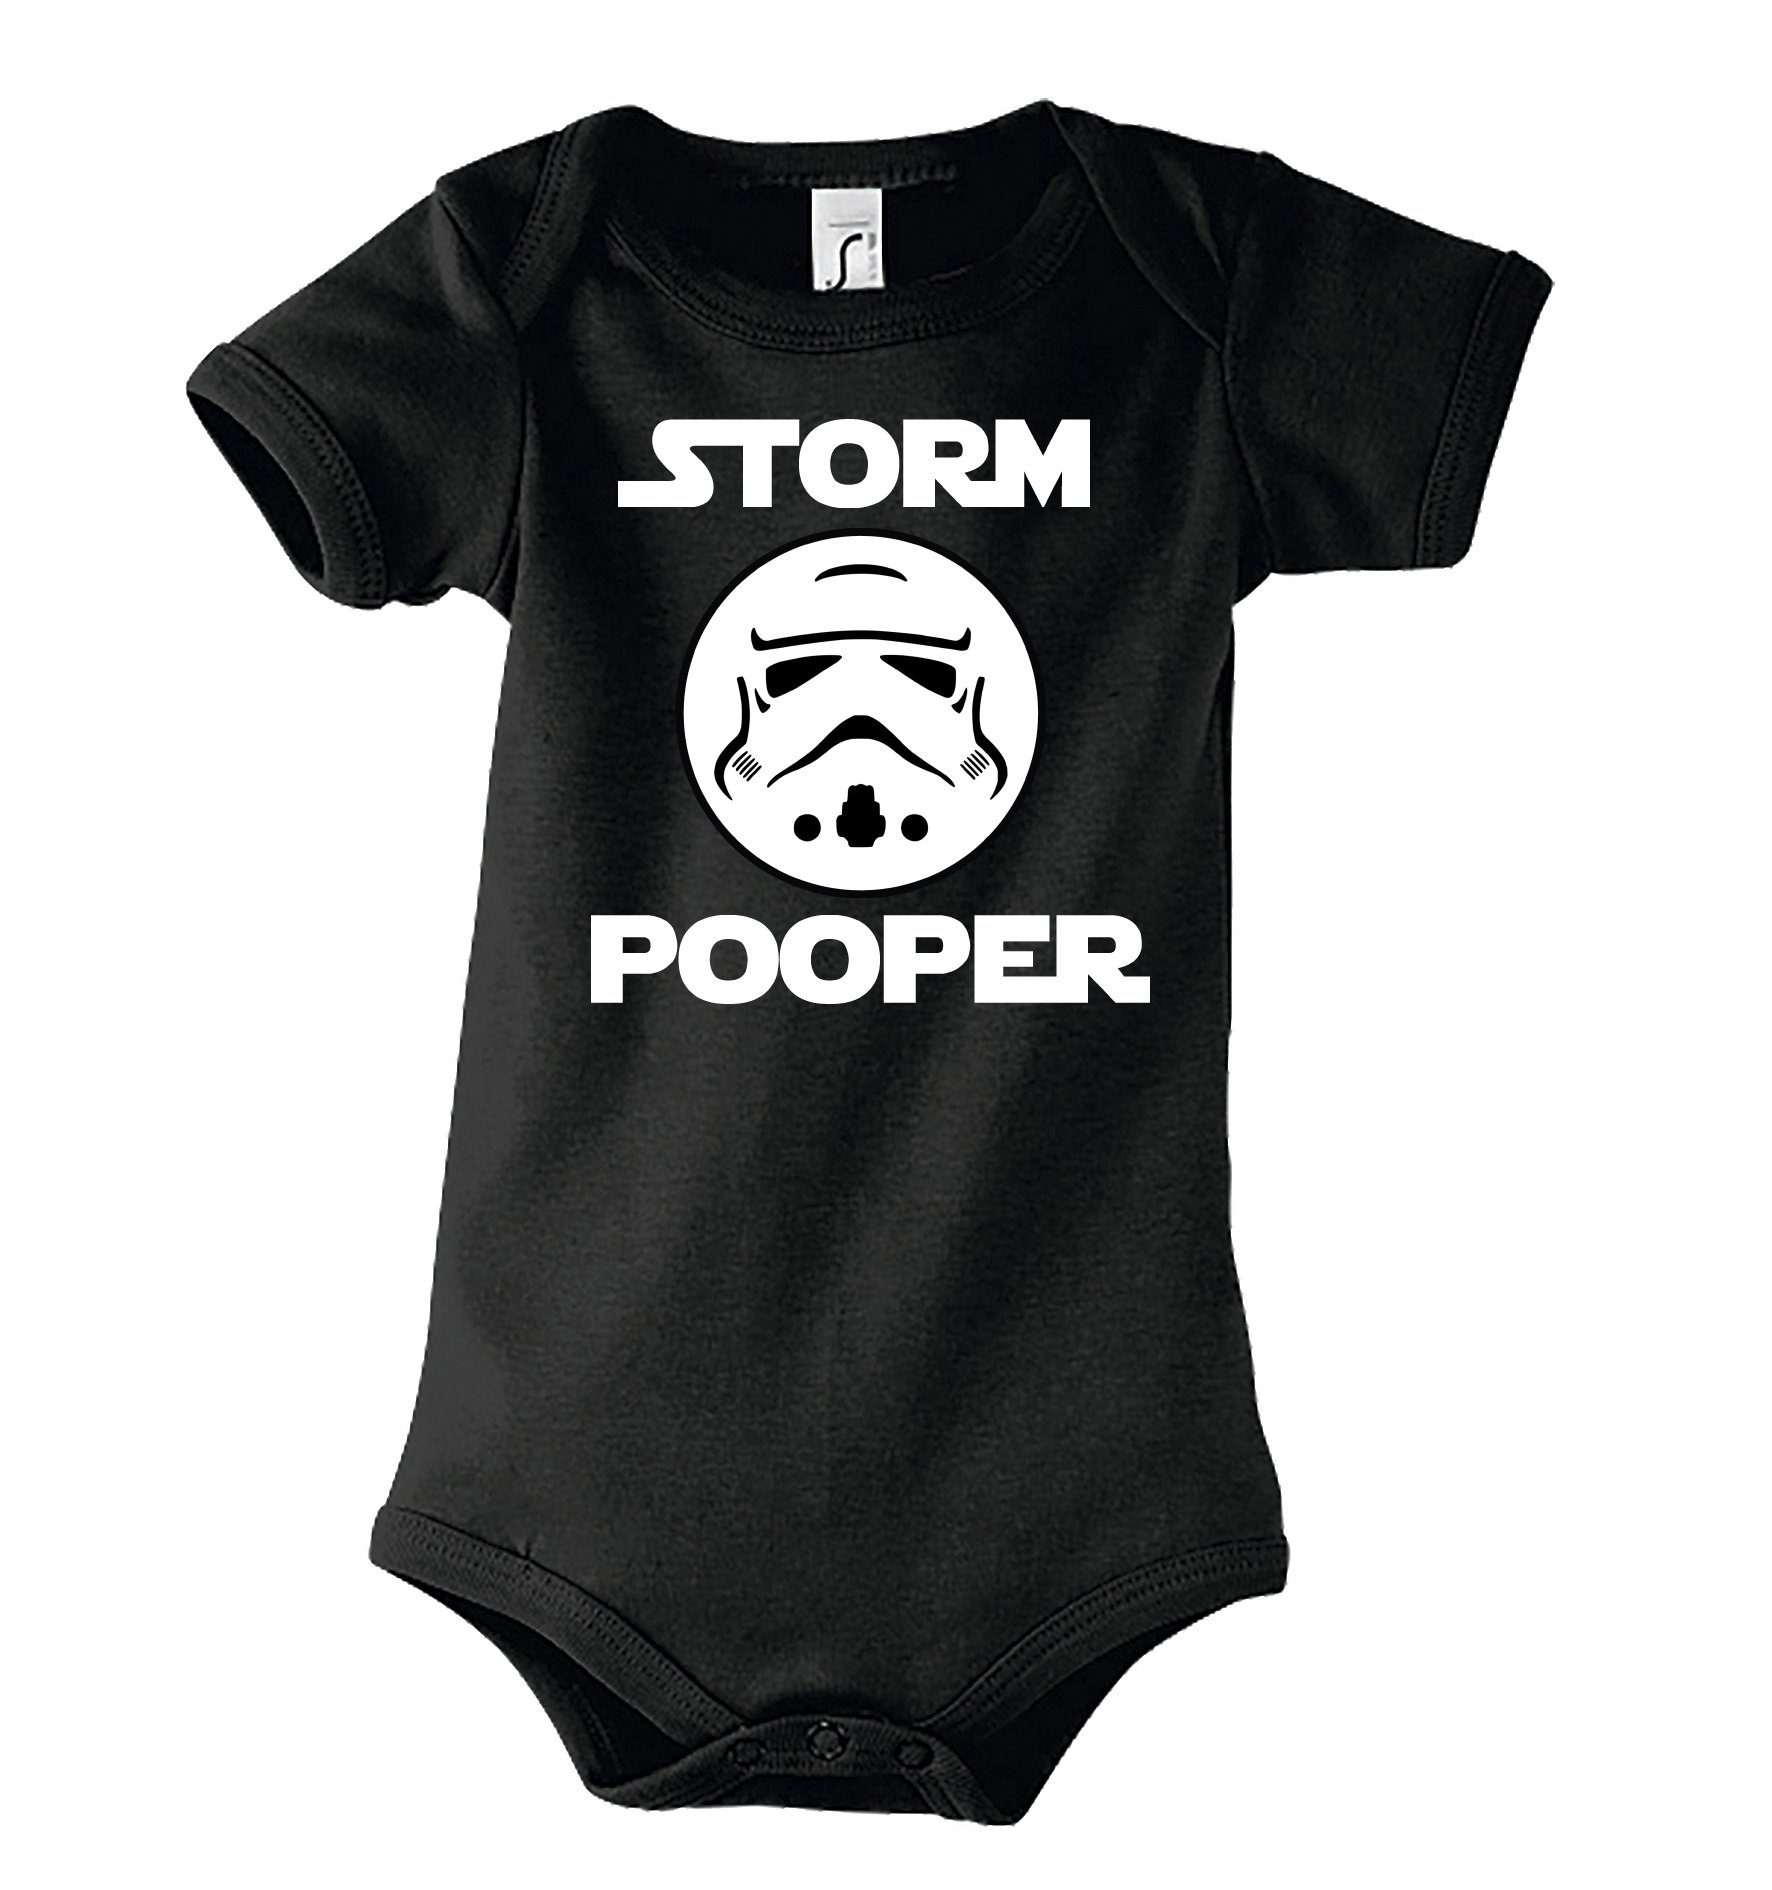 Youth Designz Kurzarmbody Storm Pooper Trooper Baby Body Kurzarm Strampler mit lustigem Spruch & Logo Print Schwarz | Shirtbodies